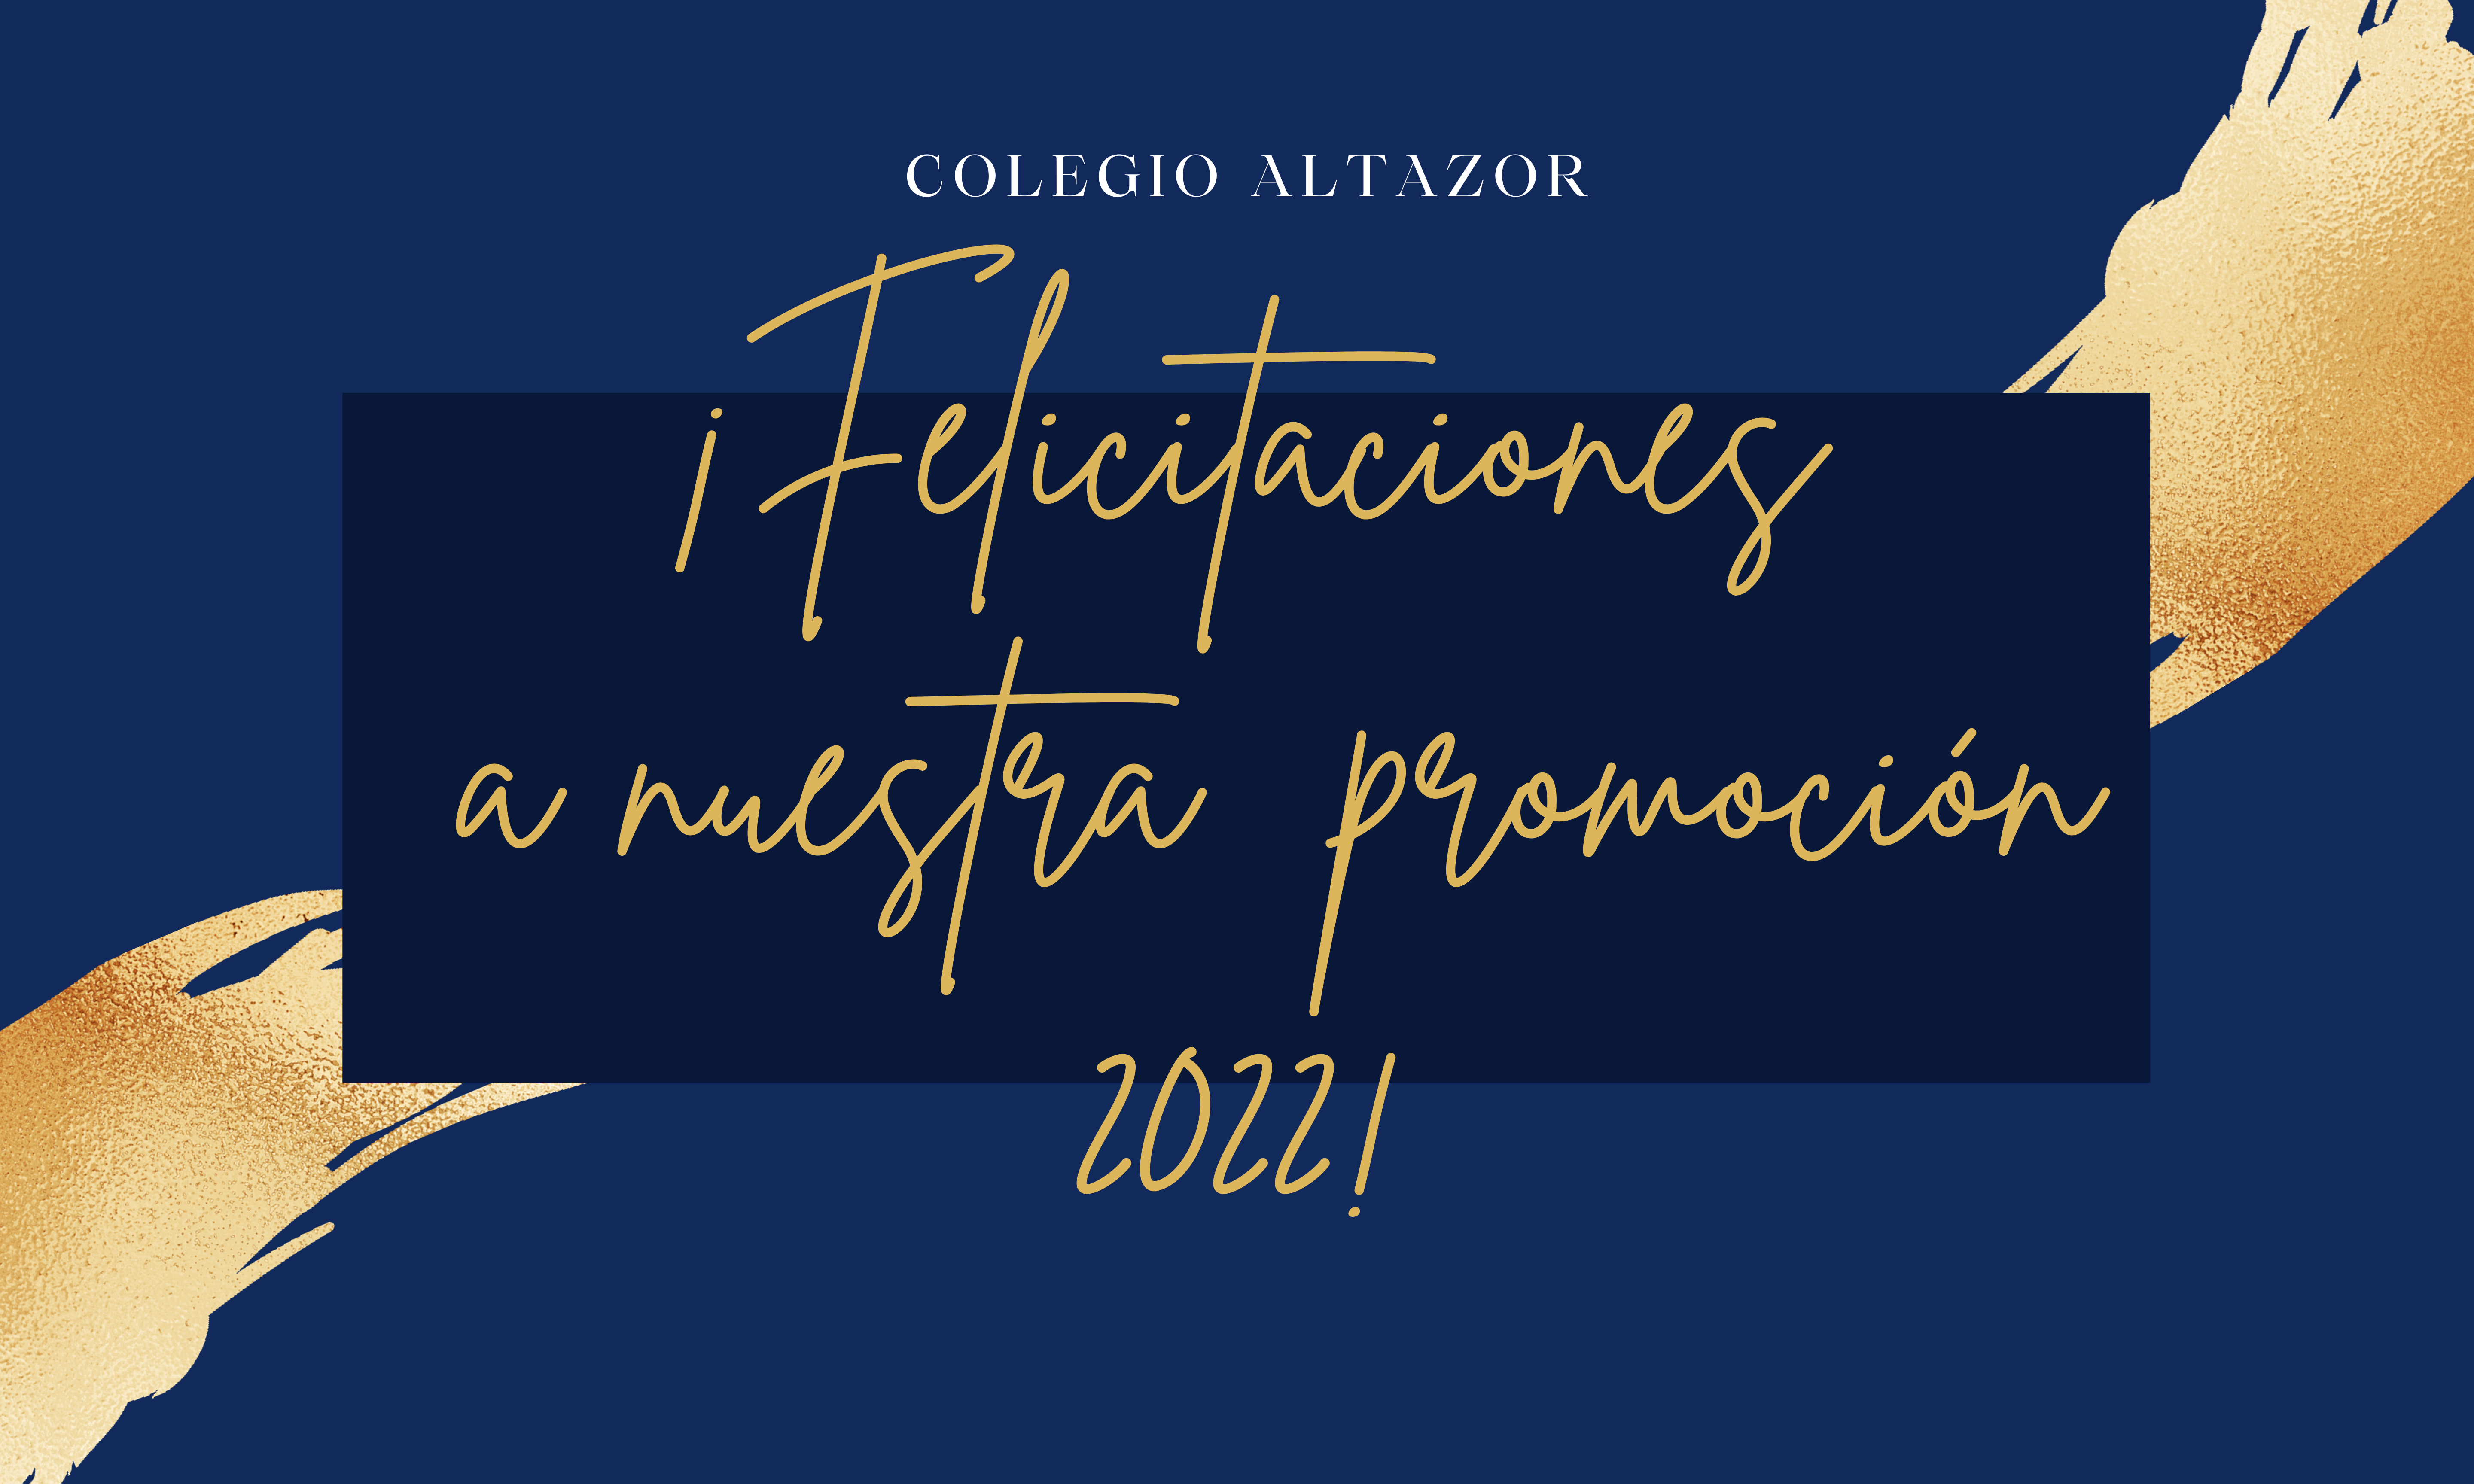 FELICITACIONES A NUESTRA PROMOCIÓN 2022